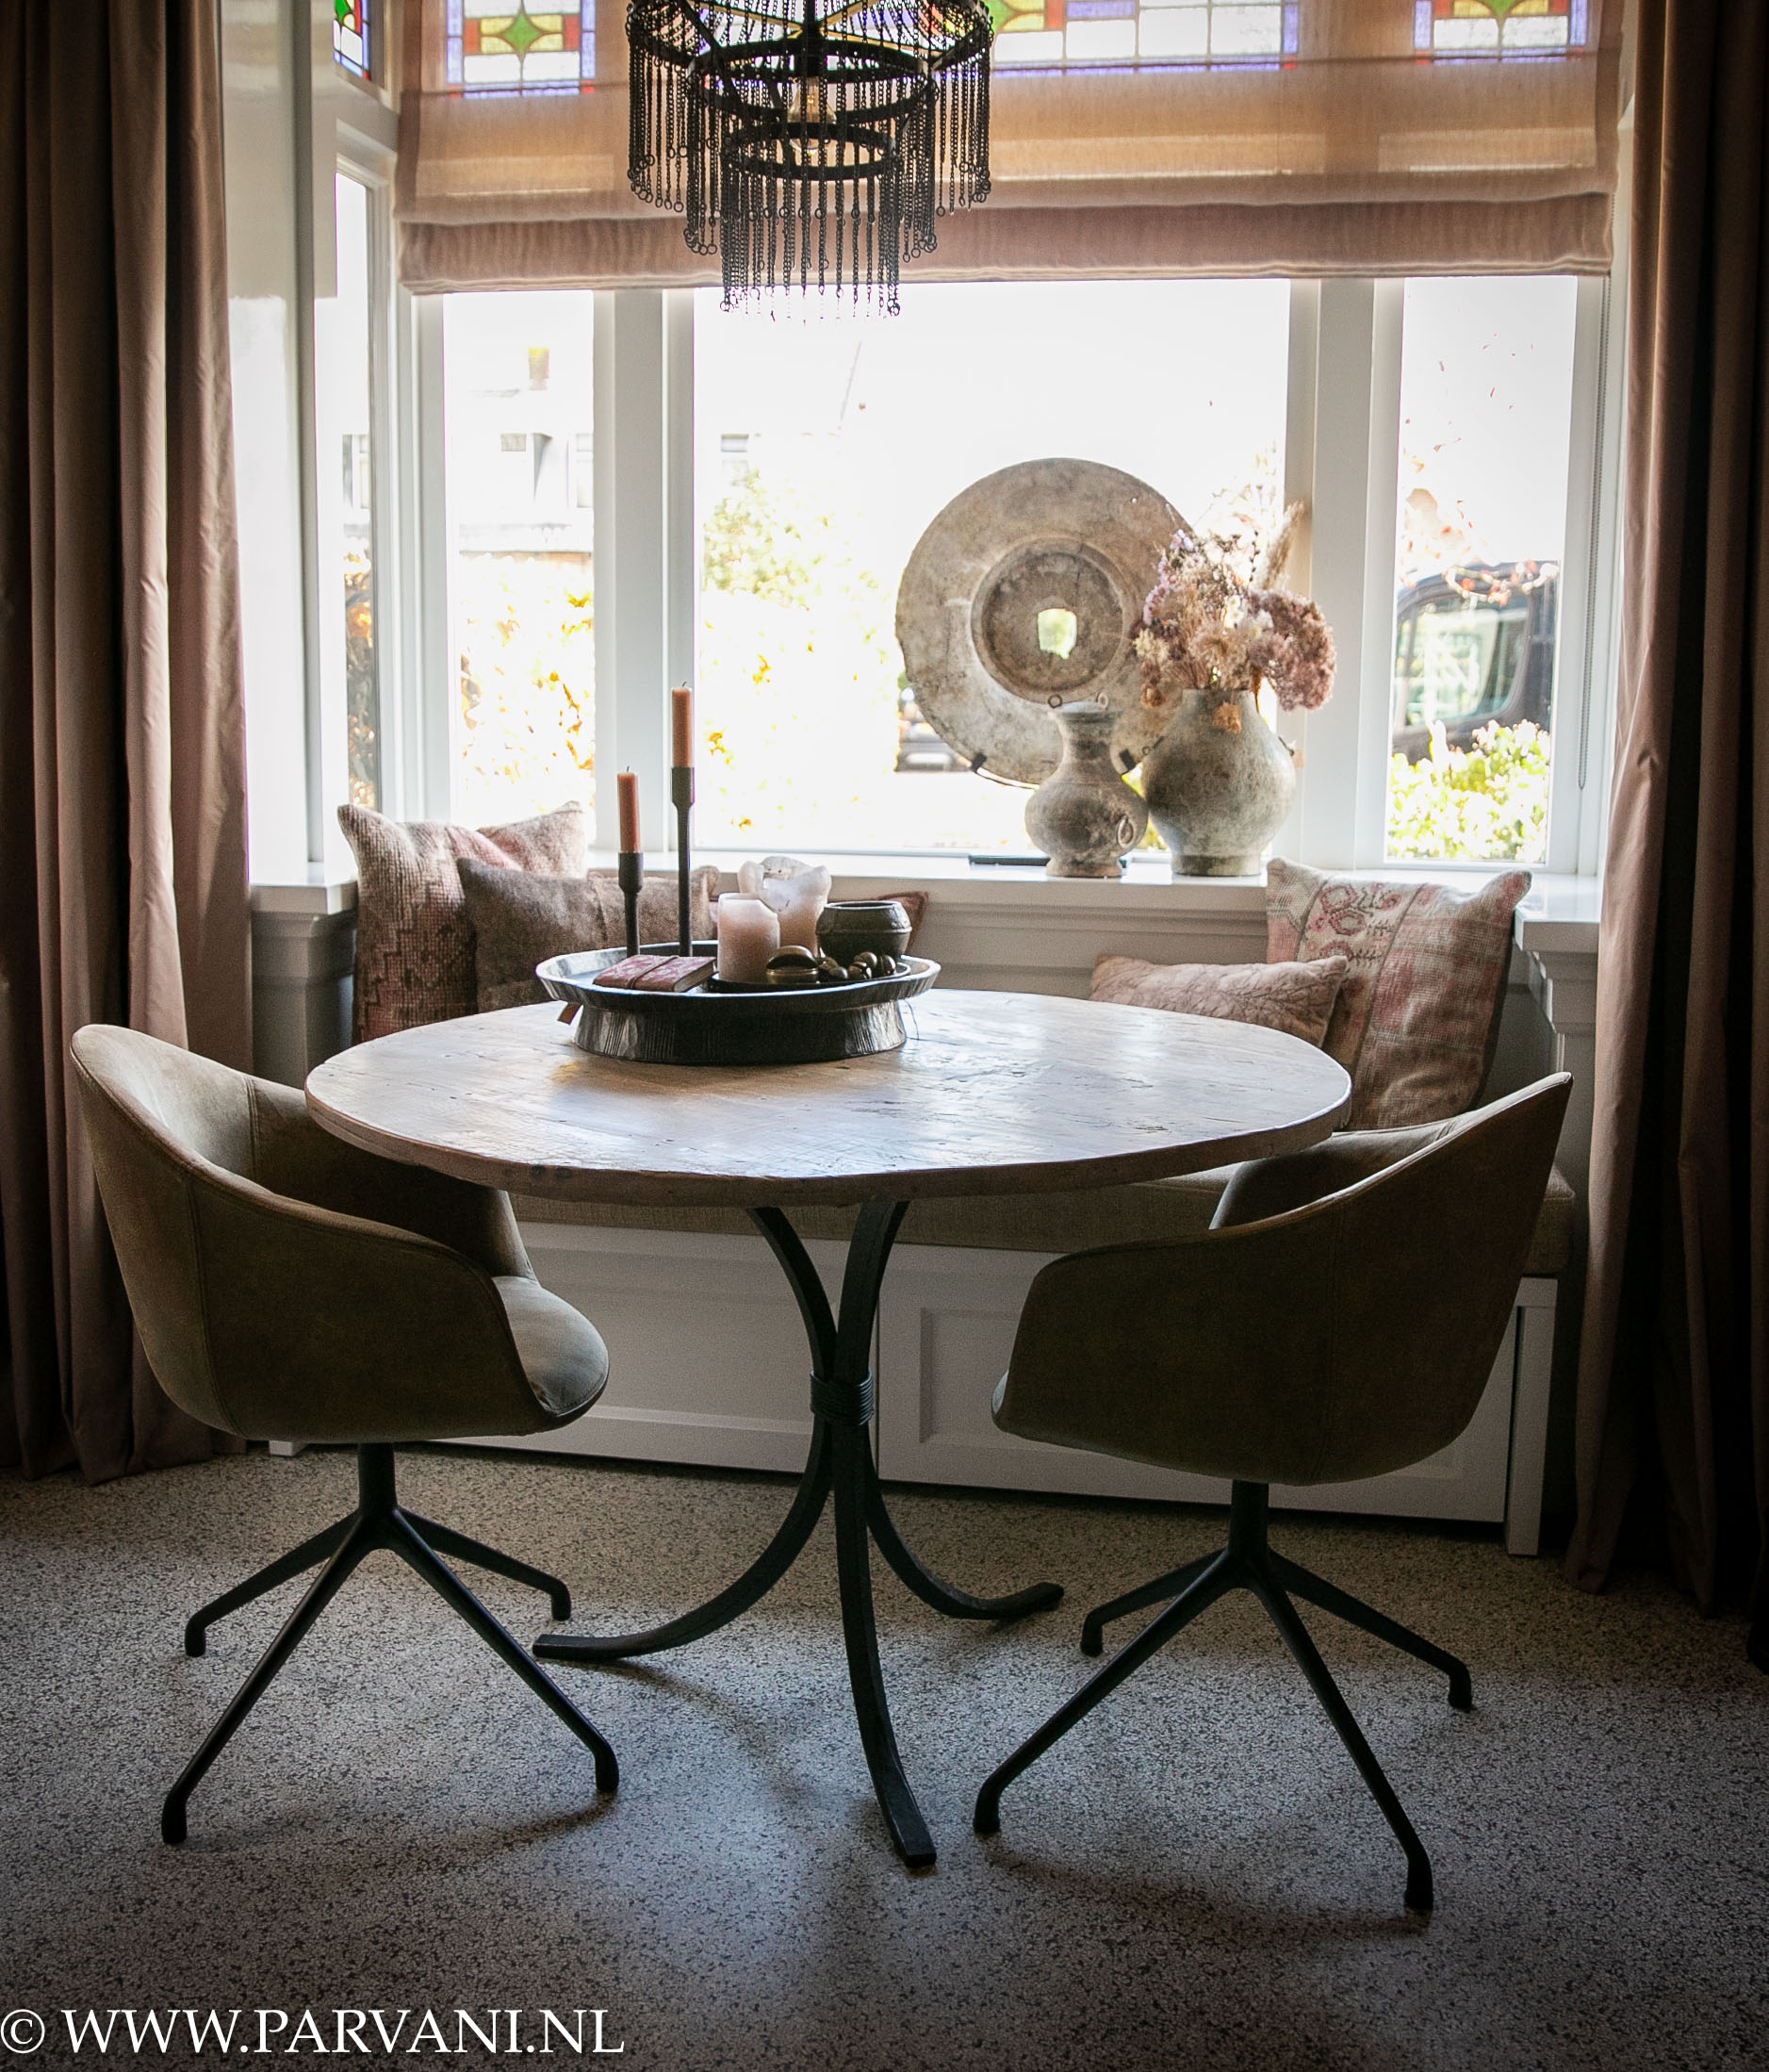 kleine ronde eettafel round dining table met oud houten blad lichte kleur en ijzeren metalen iron poot legs